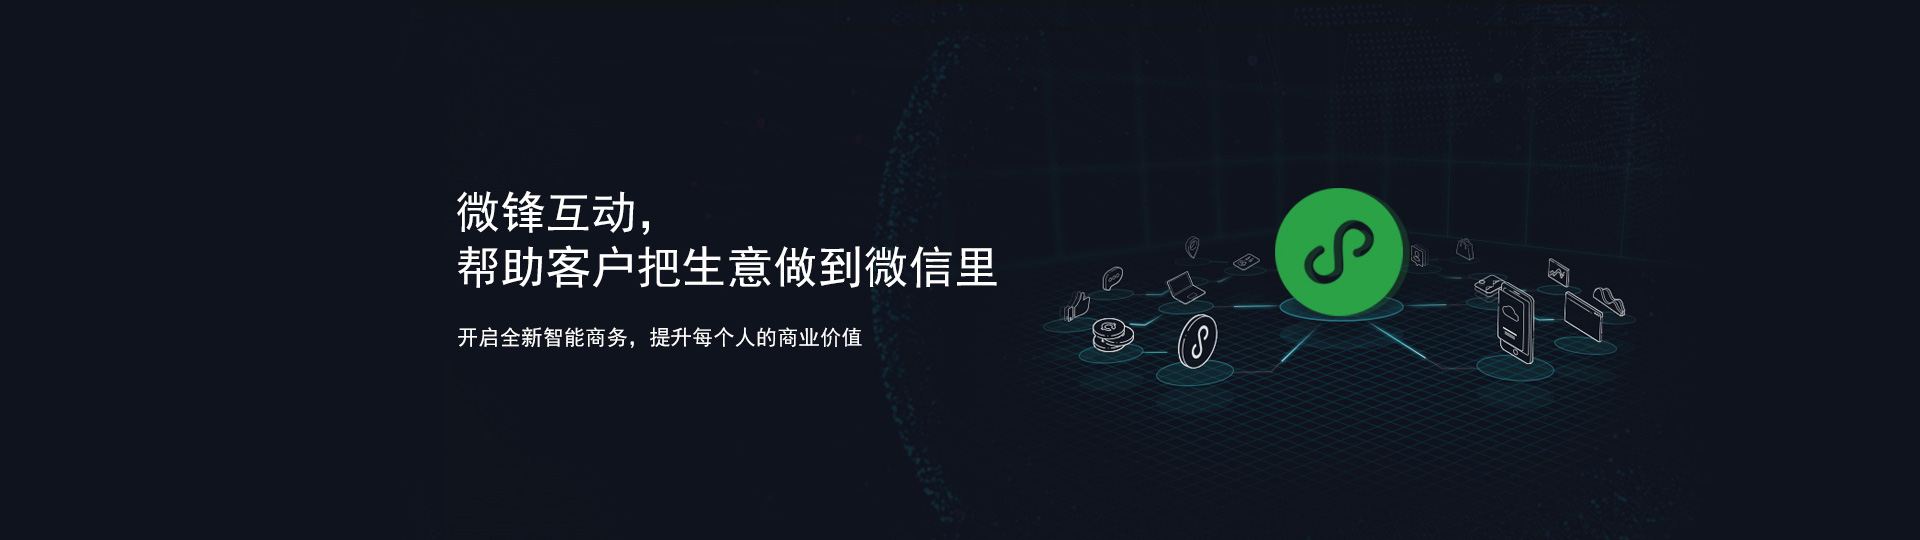 湖南微锋互动网络科技有限公司—社交营销服务商